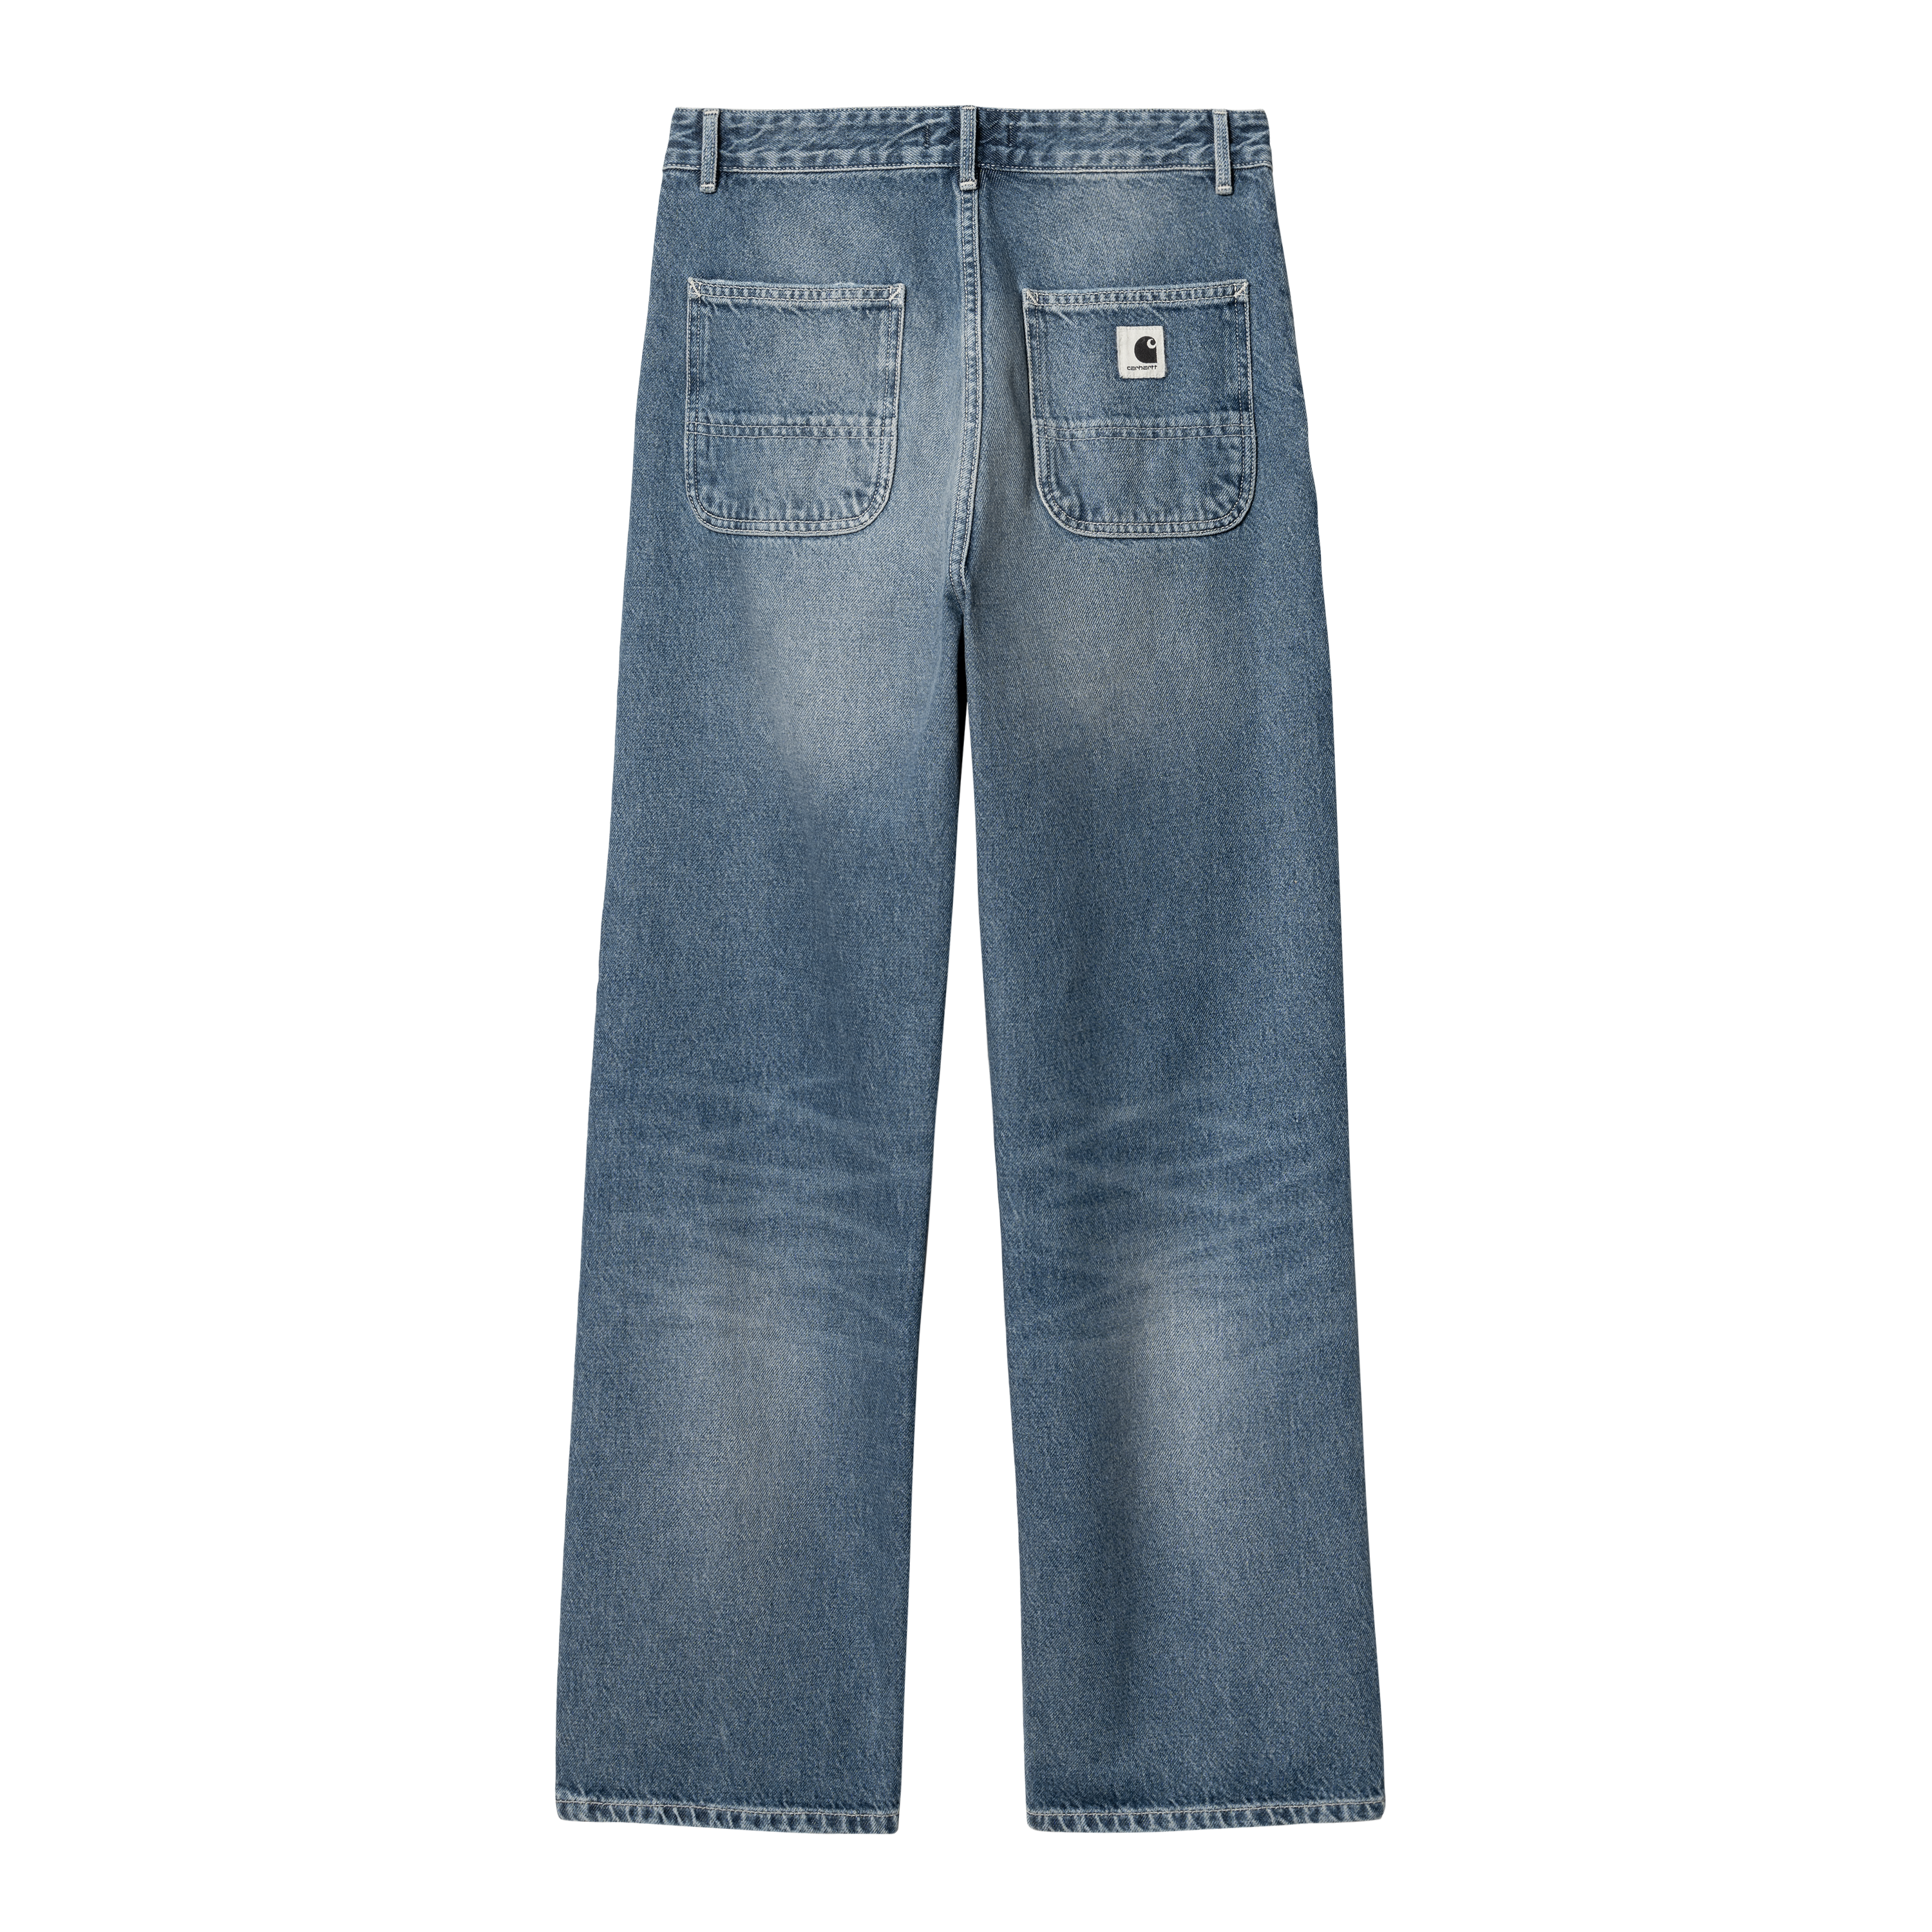 Carhartt WIP Jens Women's Pants Blue I030489-0160